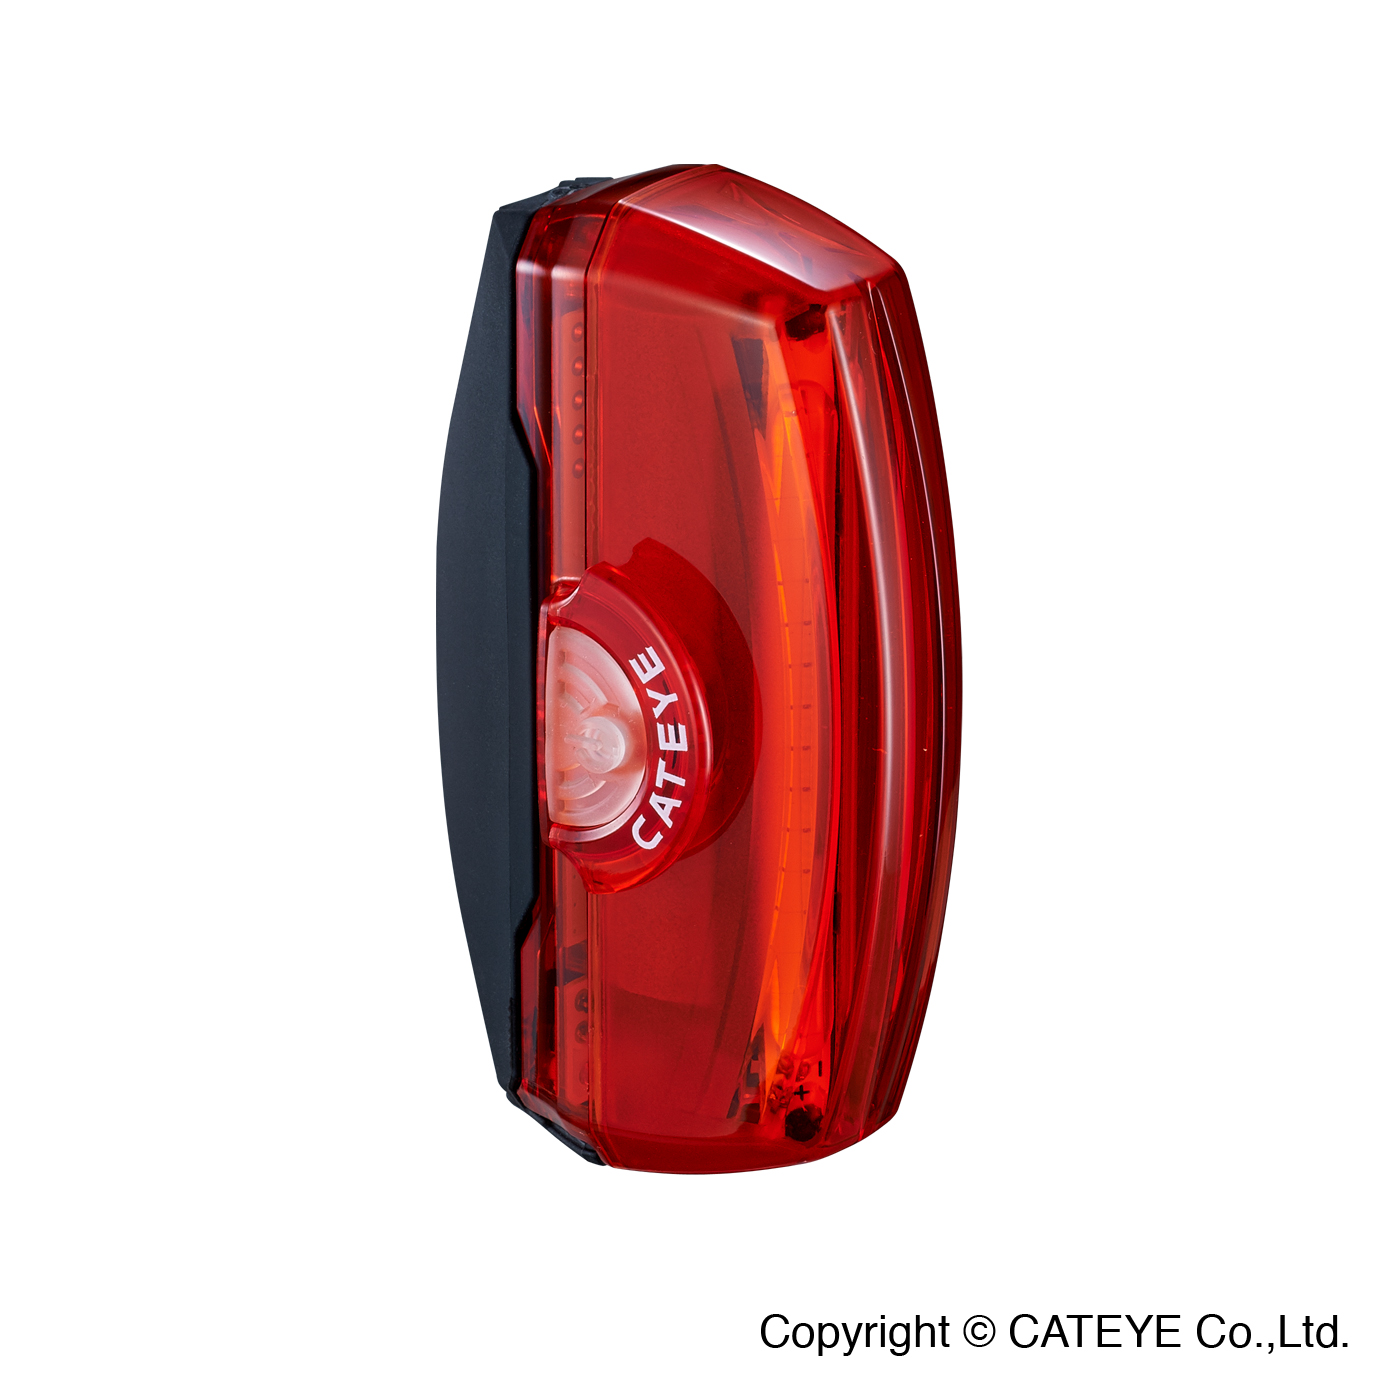 CATEYE 電暖爐警示燈 RAPID X3